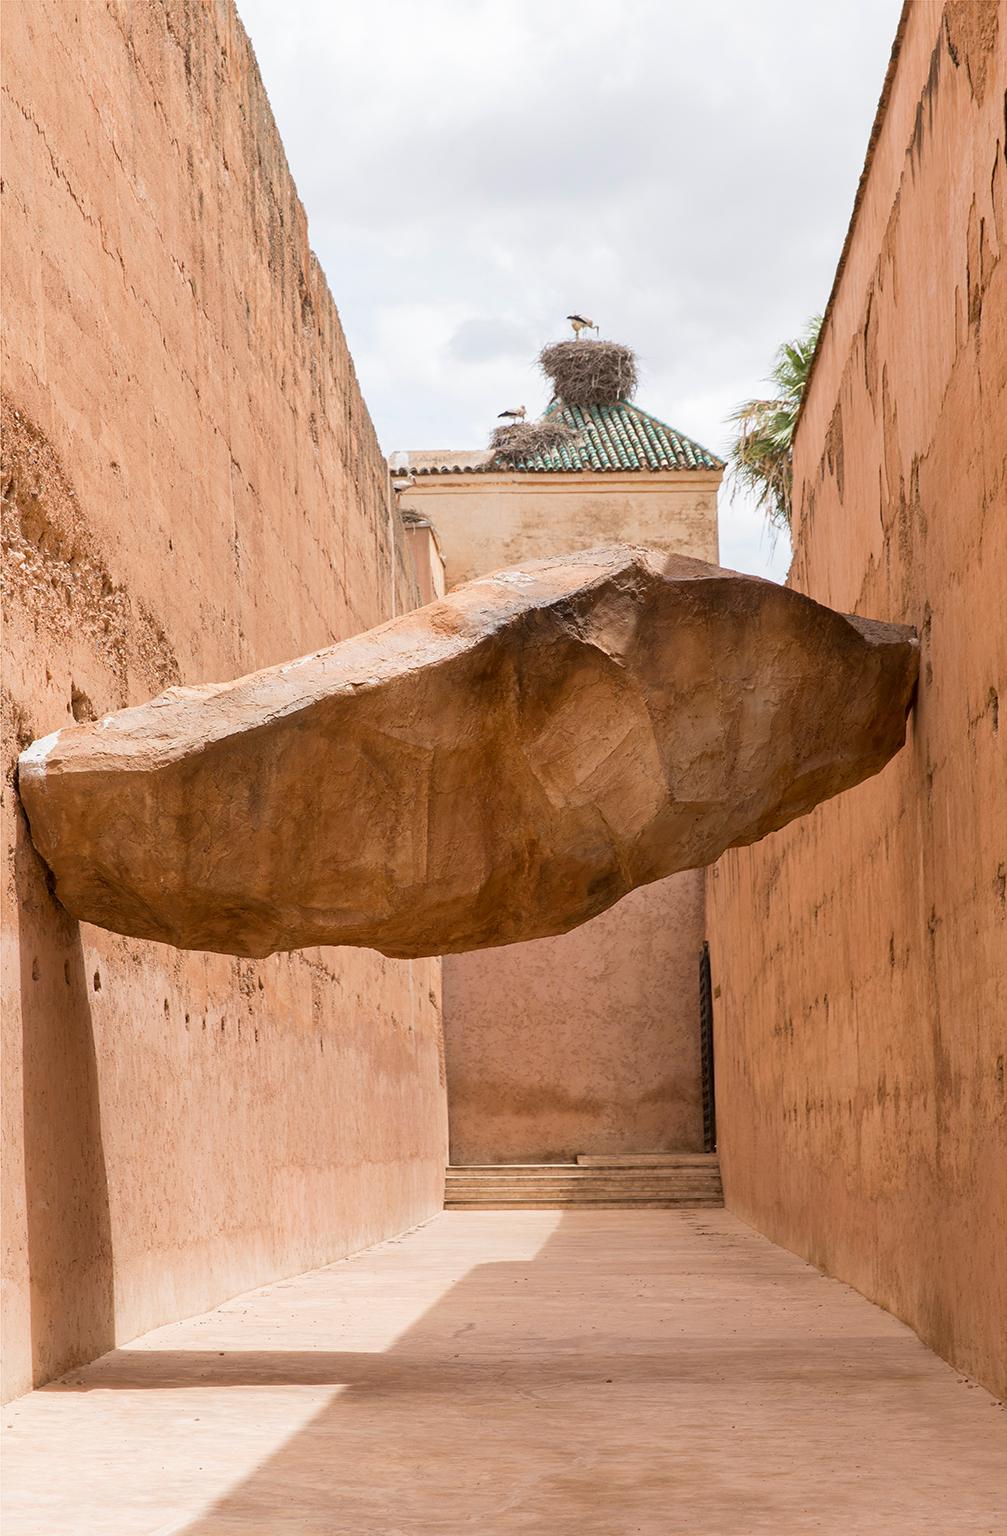  Cosmo Condina Color Photograph - Impossible balancing act.  Marrakesh, Morocco, 2016